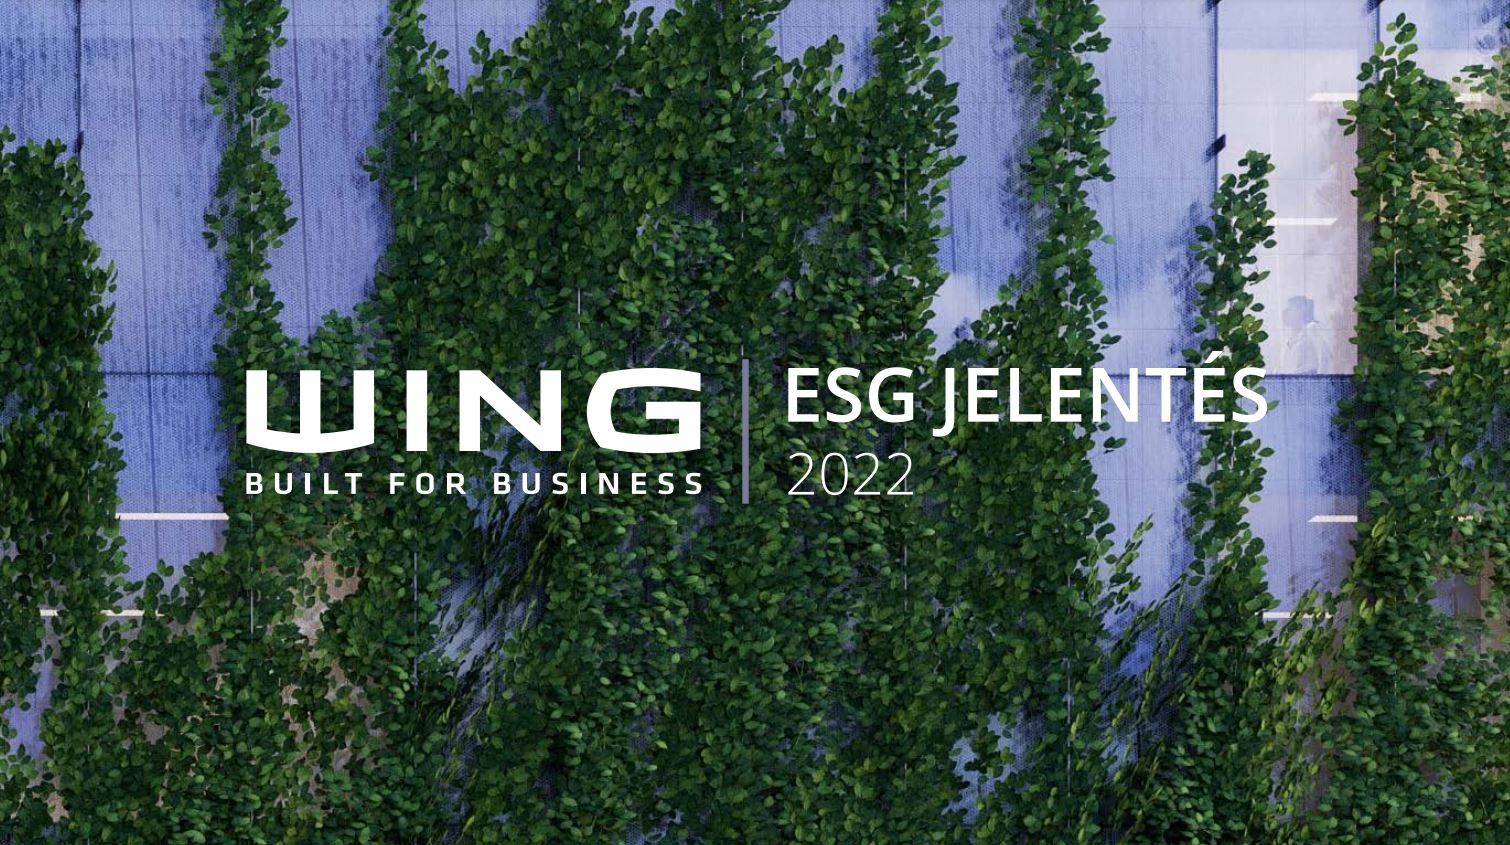 Megjelent a WING legújabb ESG jelentése